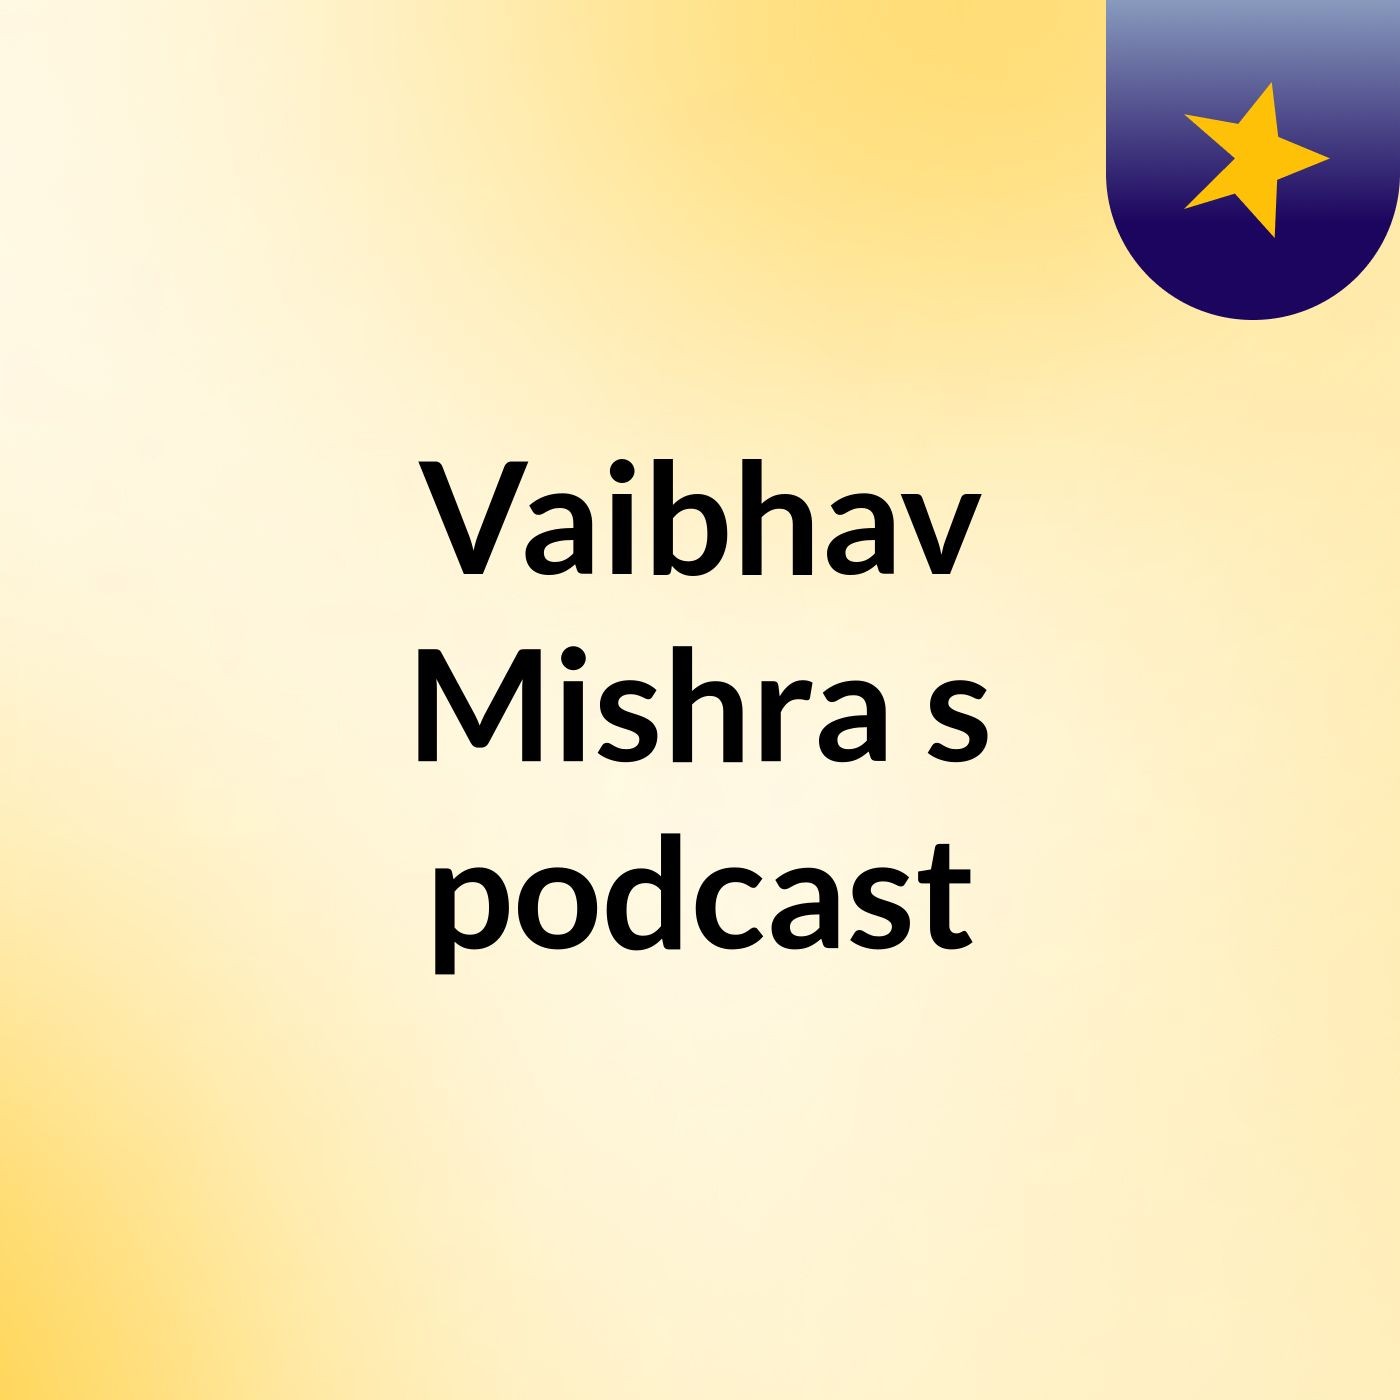 Vaibhav Mishra's podcast